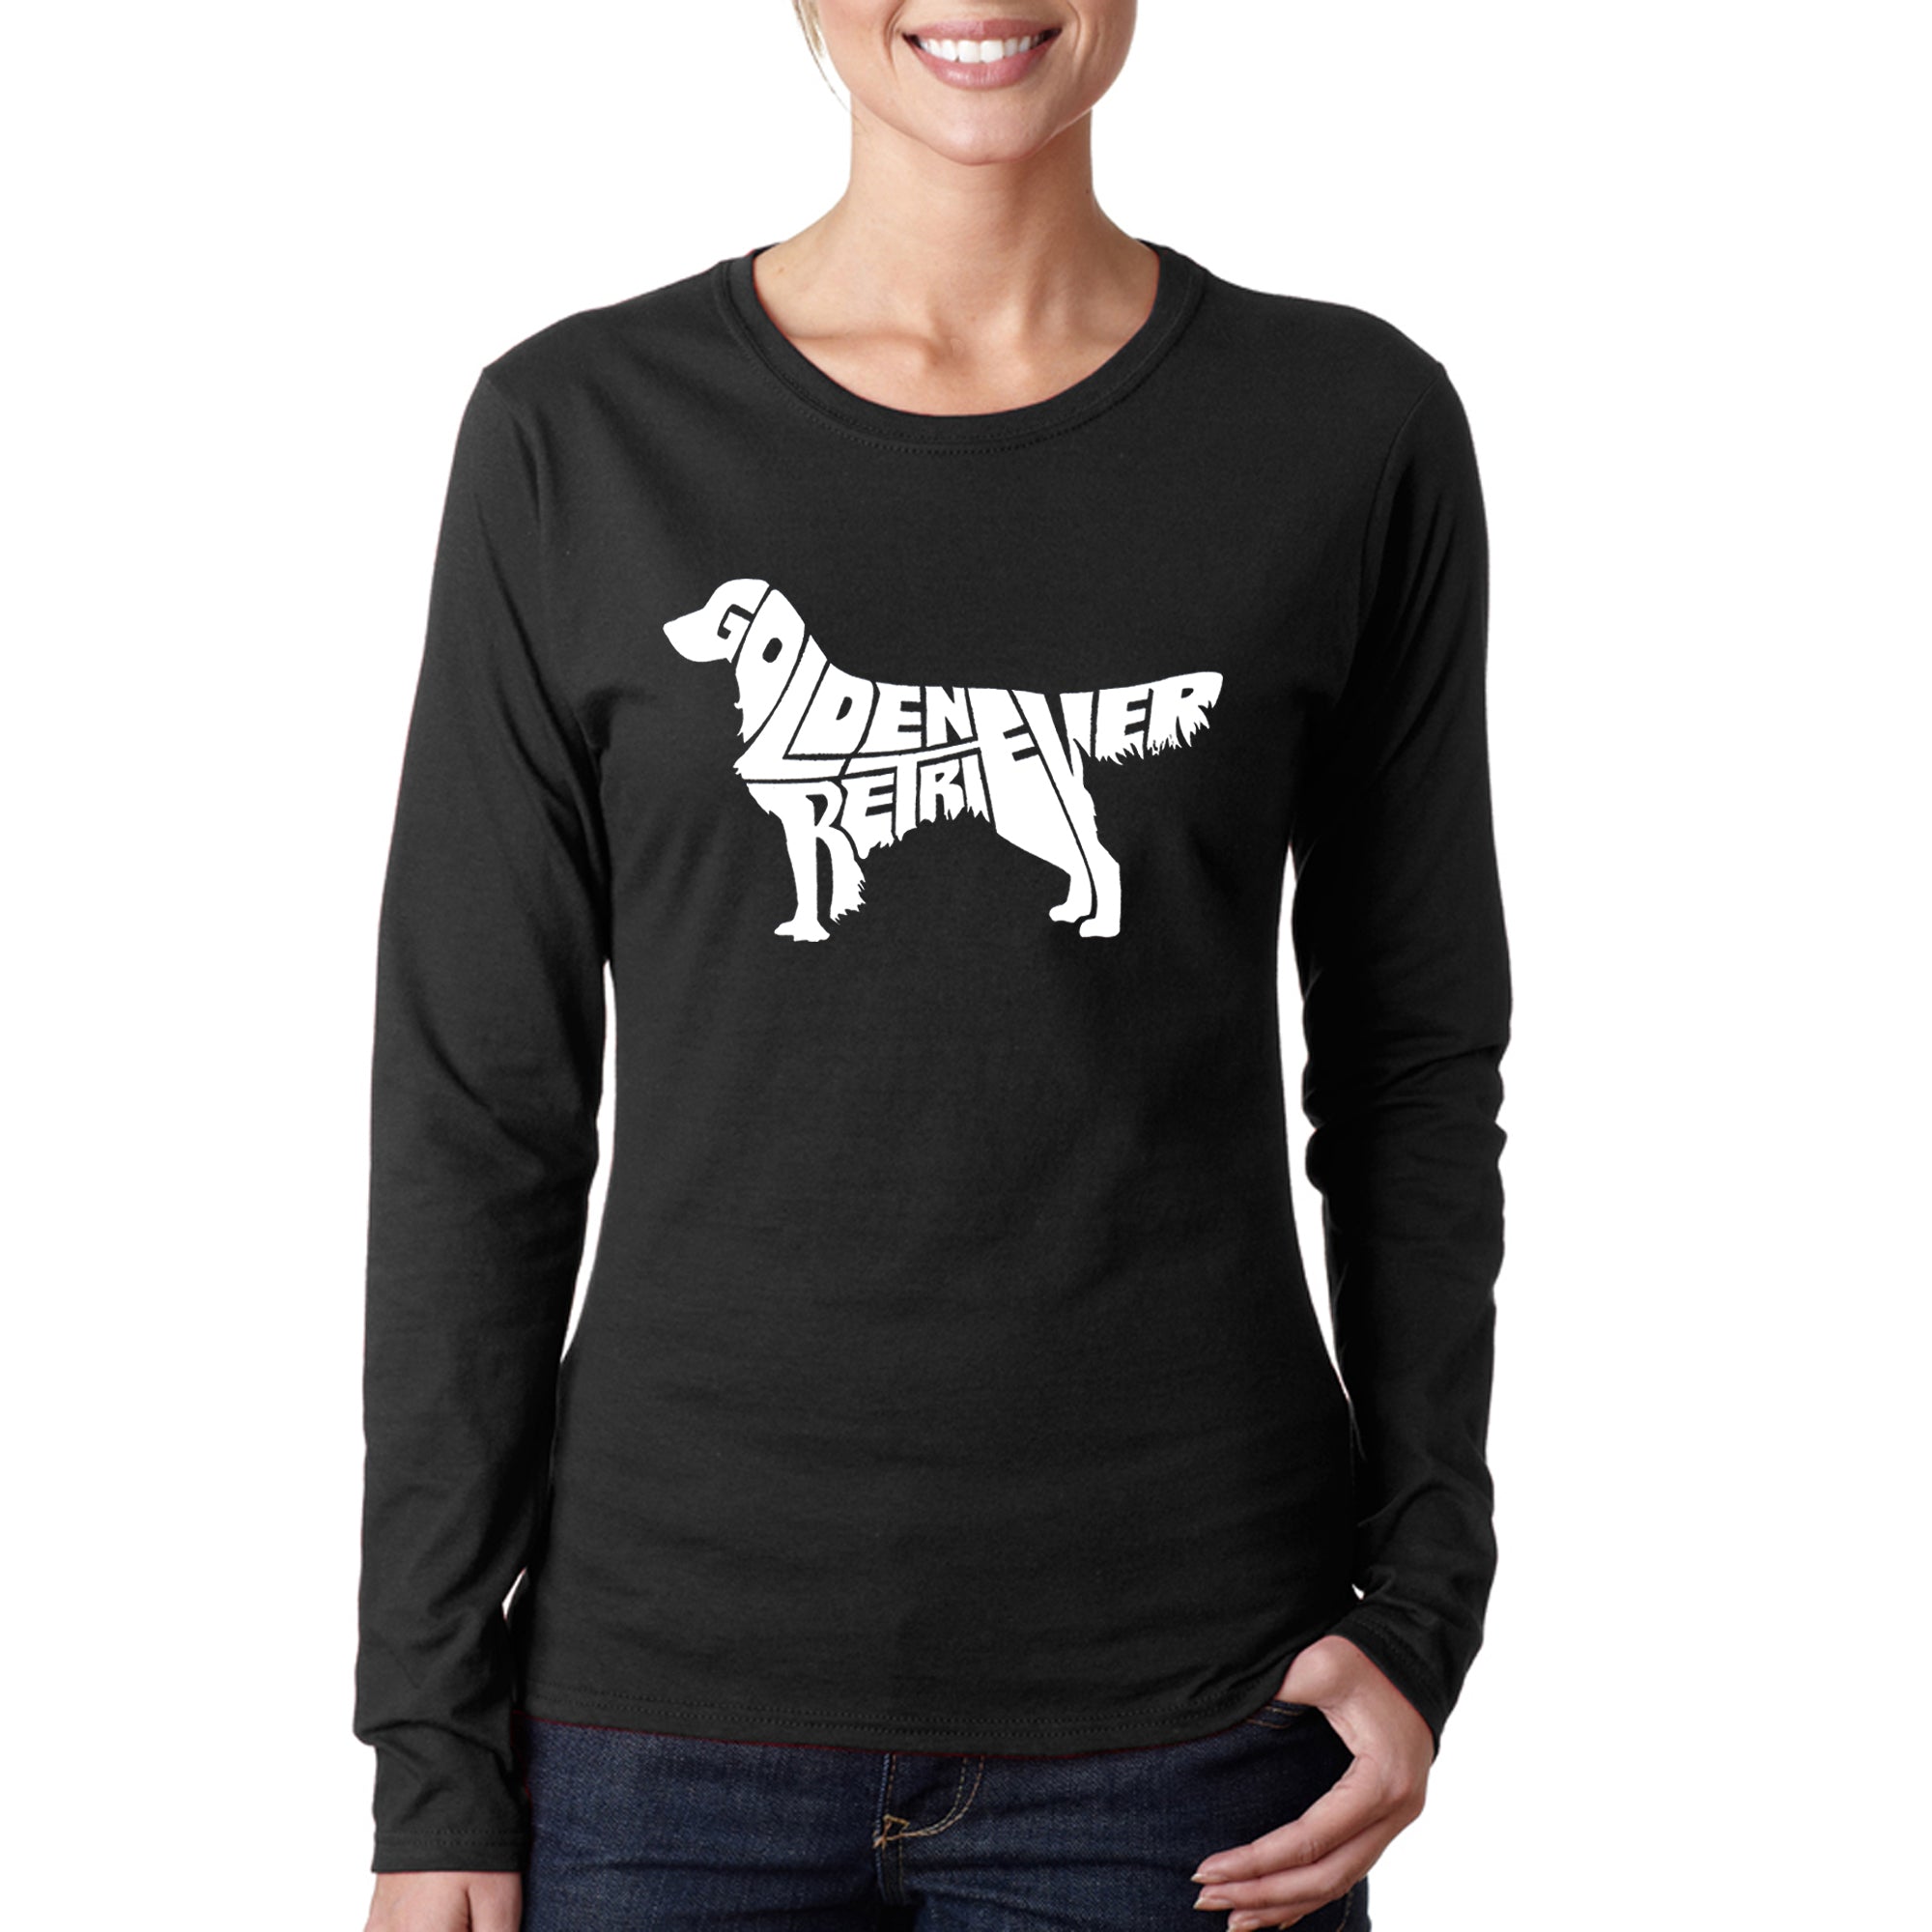 Golden Retriever - Women's Word Art Long Sleeve T-Shirt - Black - X-Large